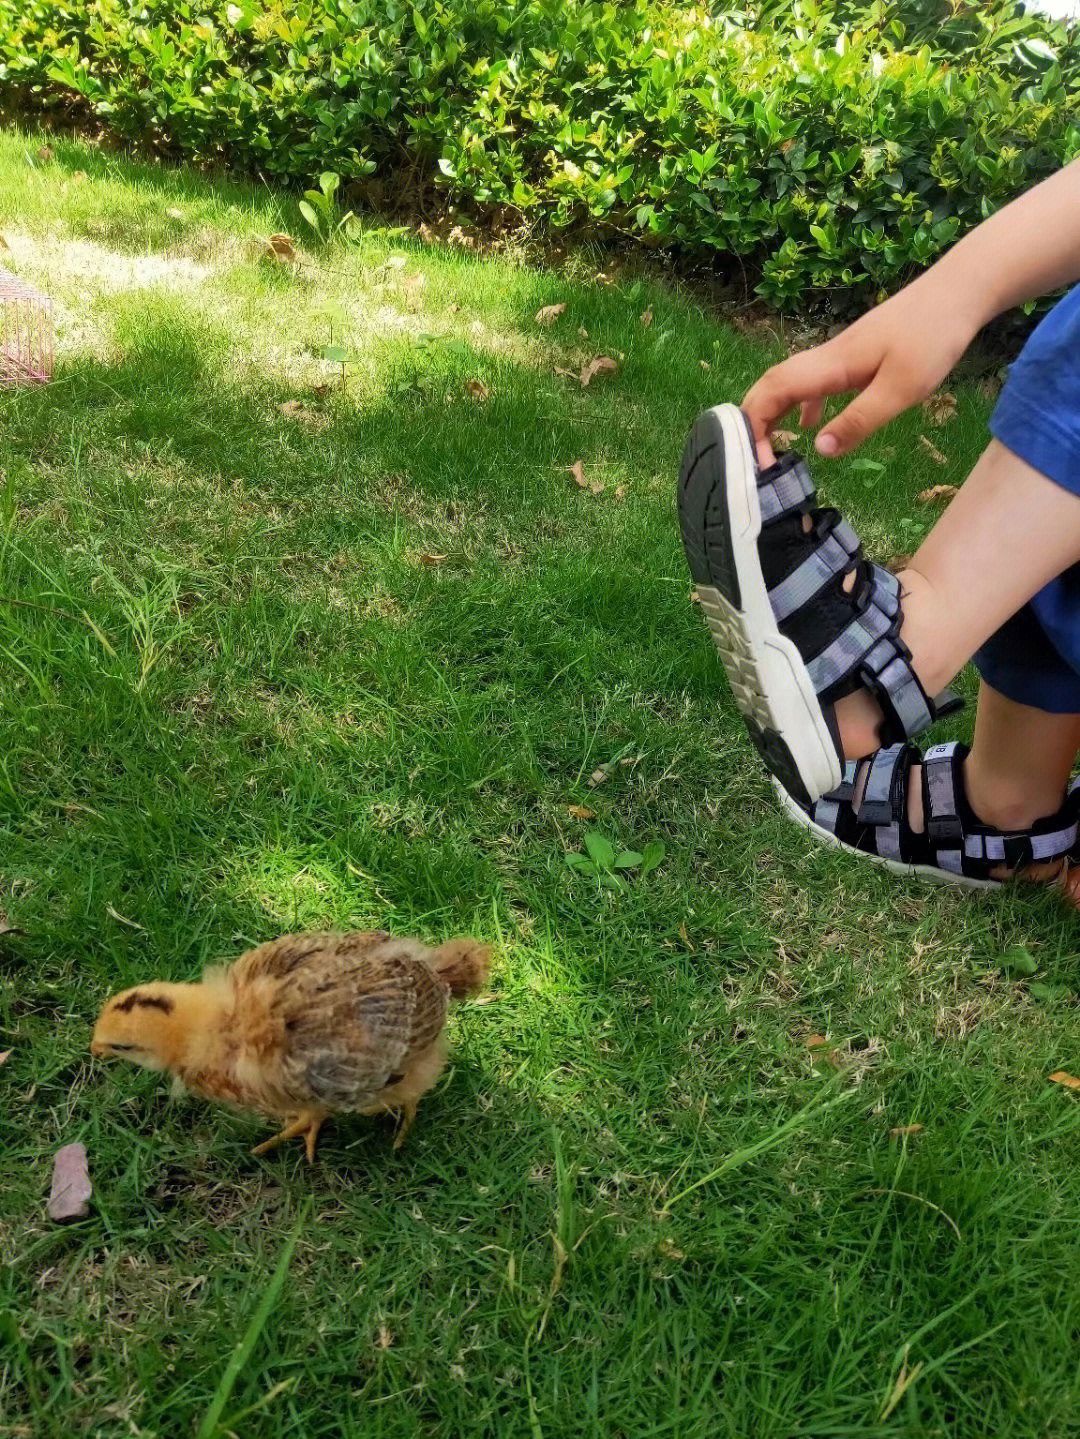 我看到小鸡惊奇地问:妈妈,怎么可爱的小鸡是从哪里来的?